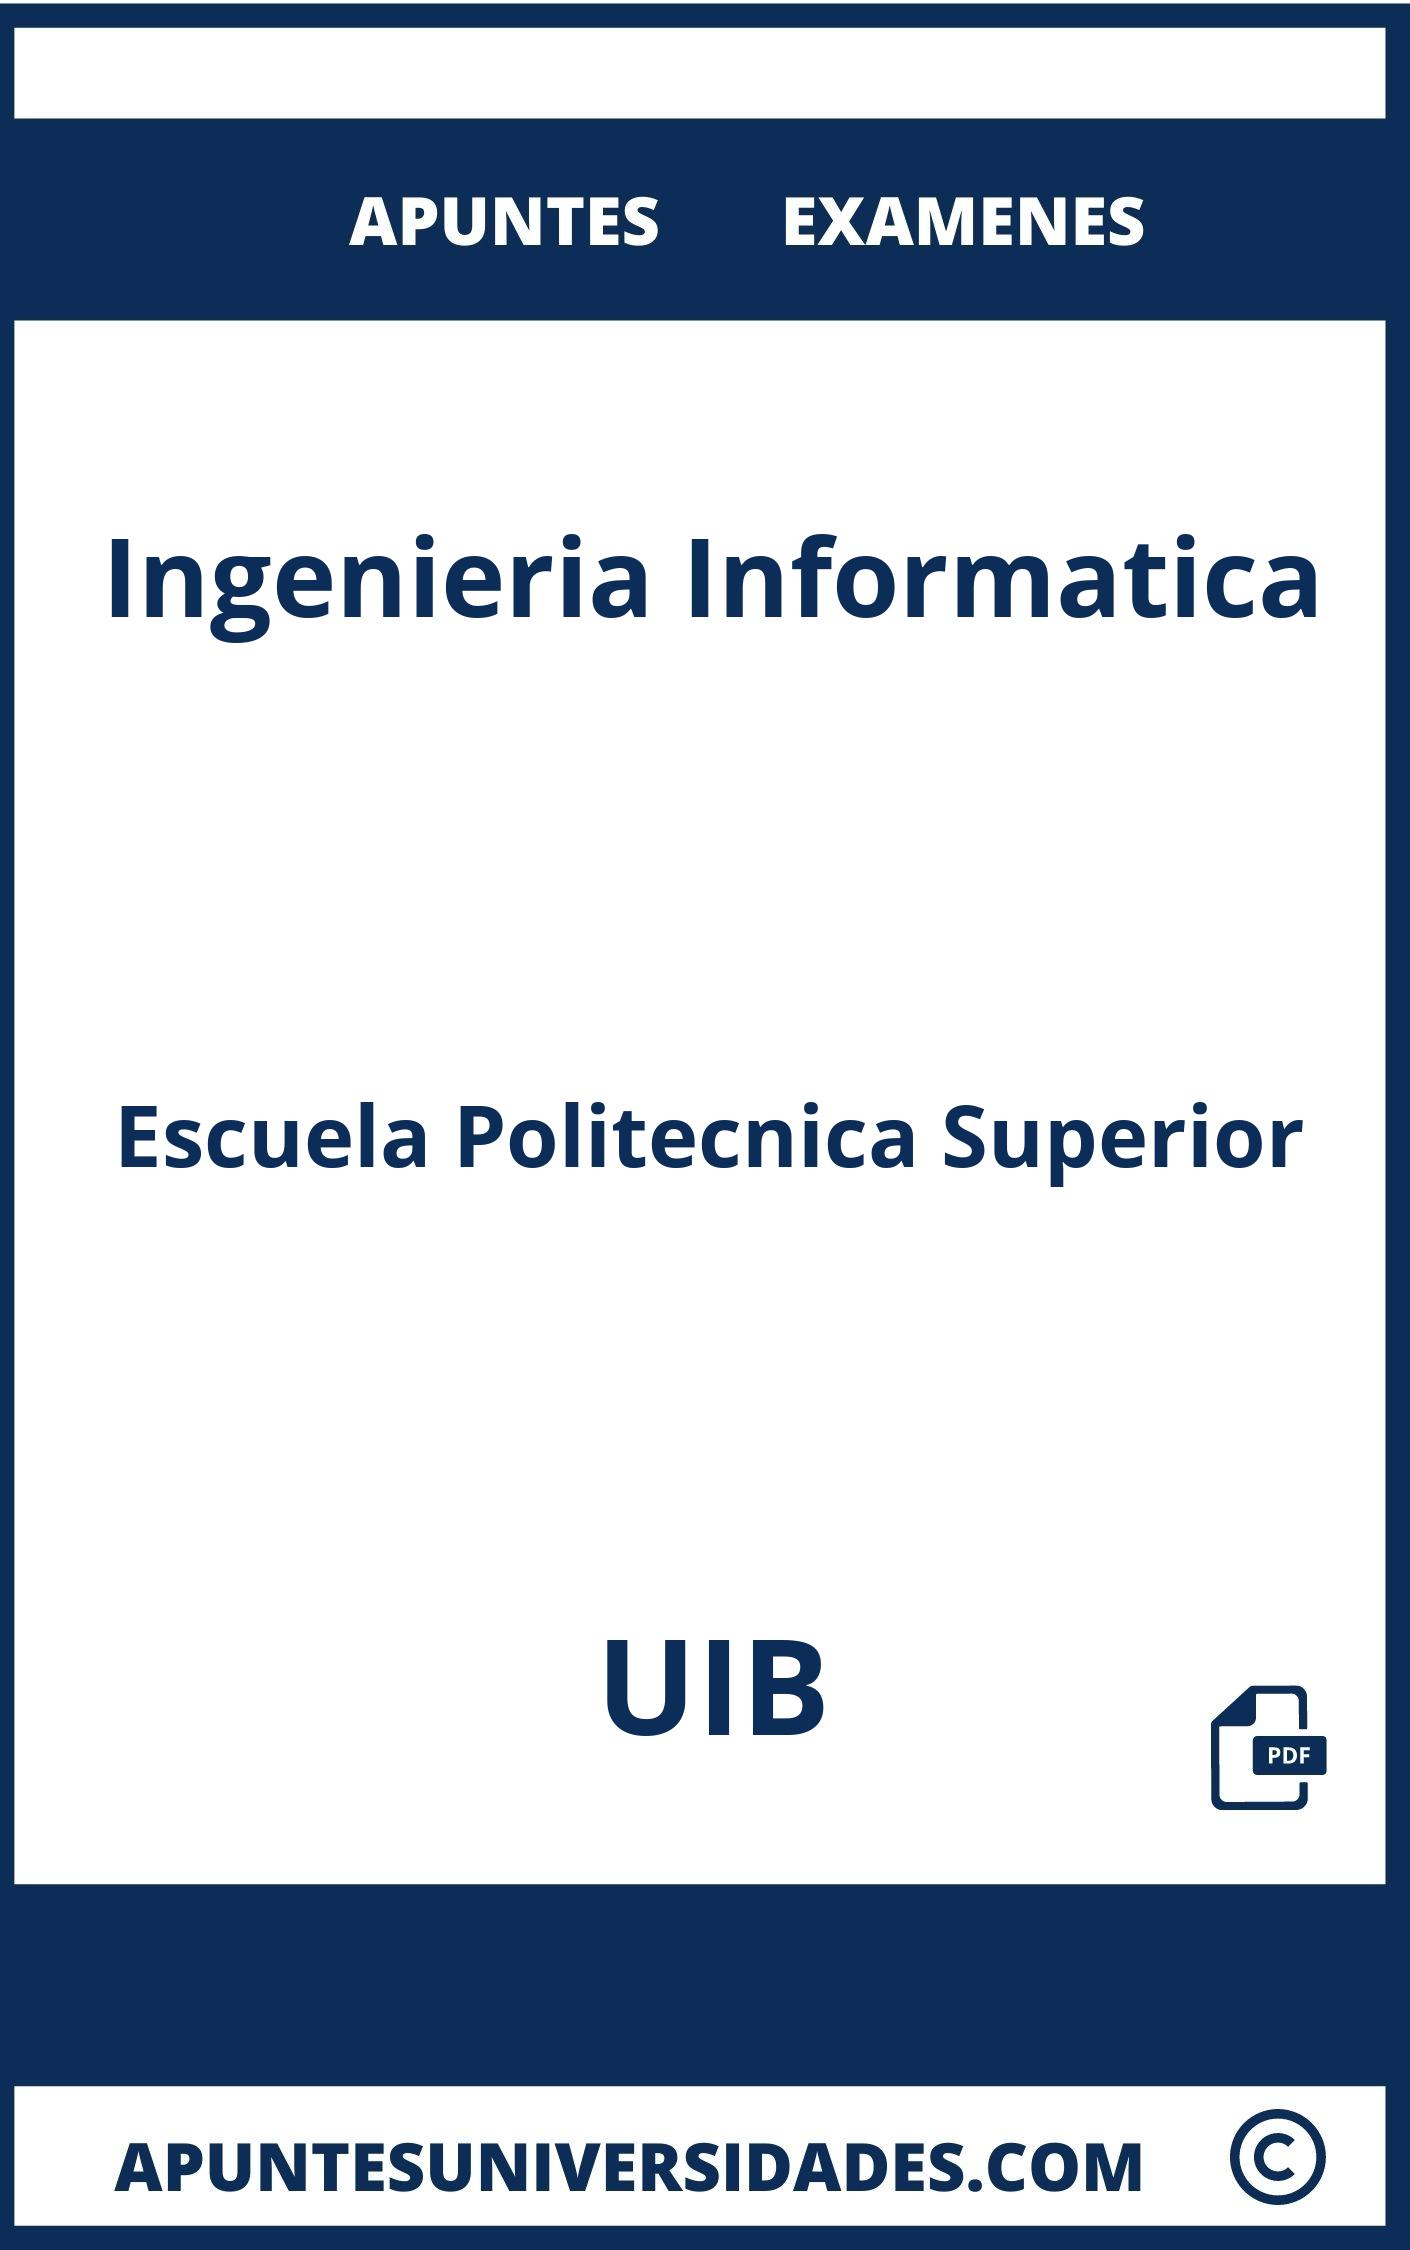 Apuntes y Examenes Ingenieria Informatica UIB